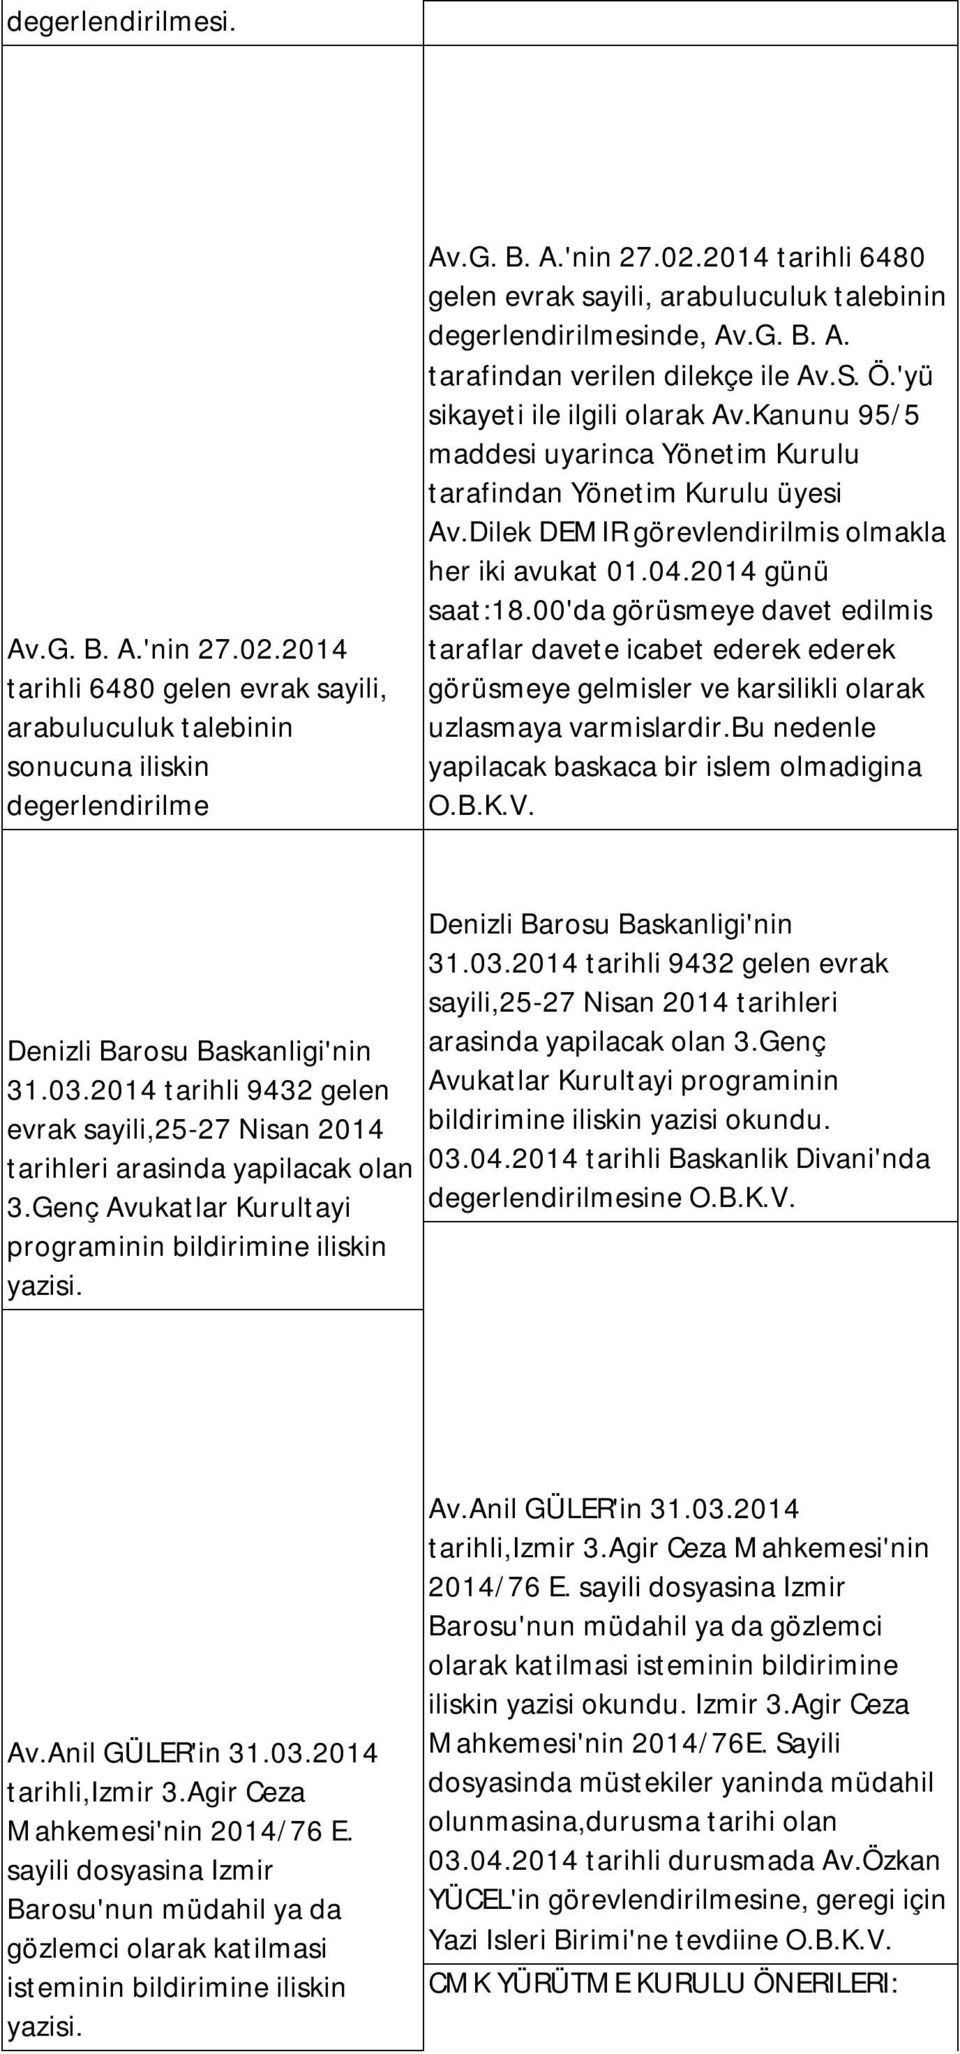 Dilek DEMIR görevlendirilmis olmakla her iki avukat 01.04.2014 günü saat:18.